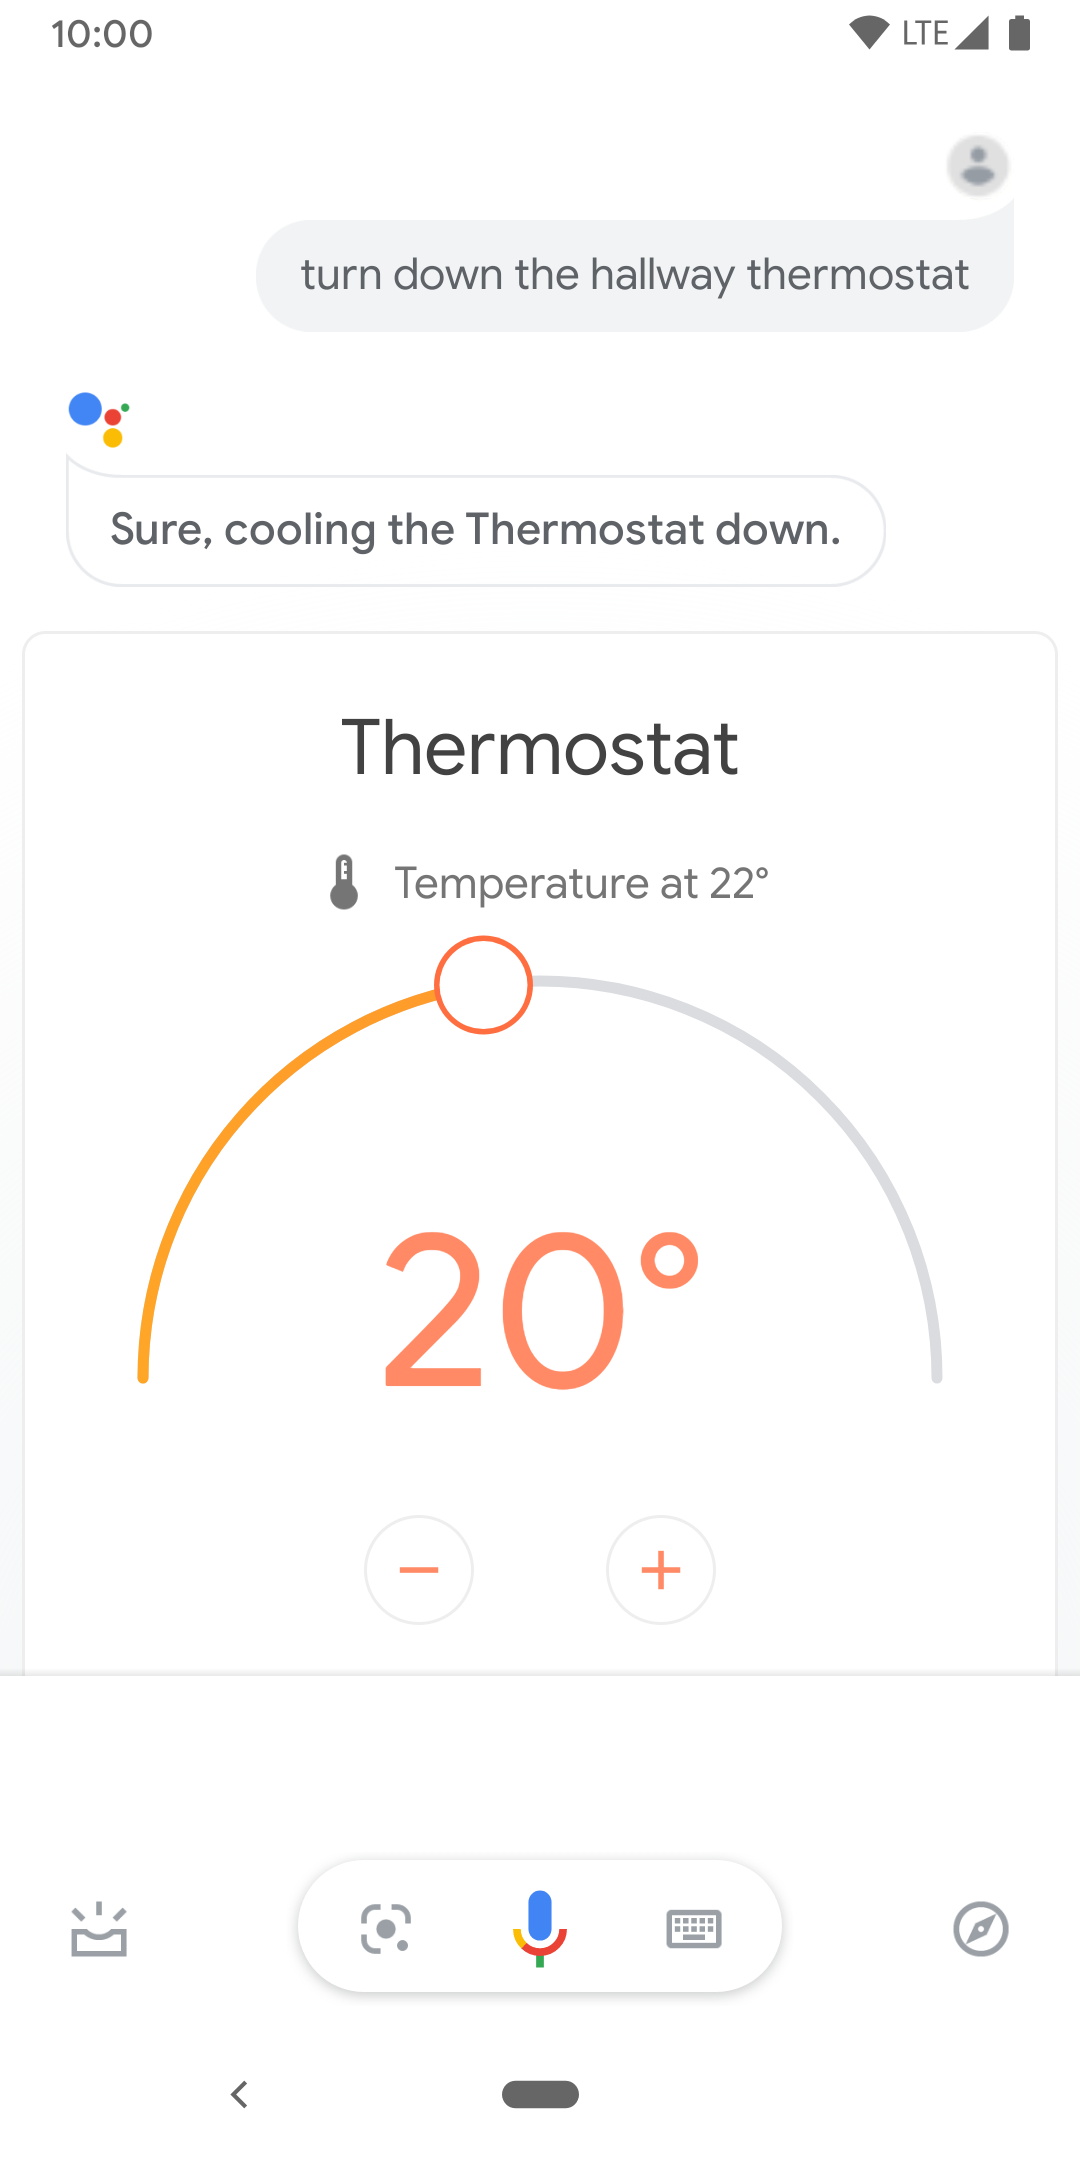 इस इमेज में, हॉलवे थर्मोस्टैट के तापमान को कंट्रोल करने के लिए, टच कंट्रोल दिखाए गए हैं.